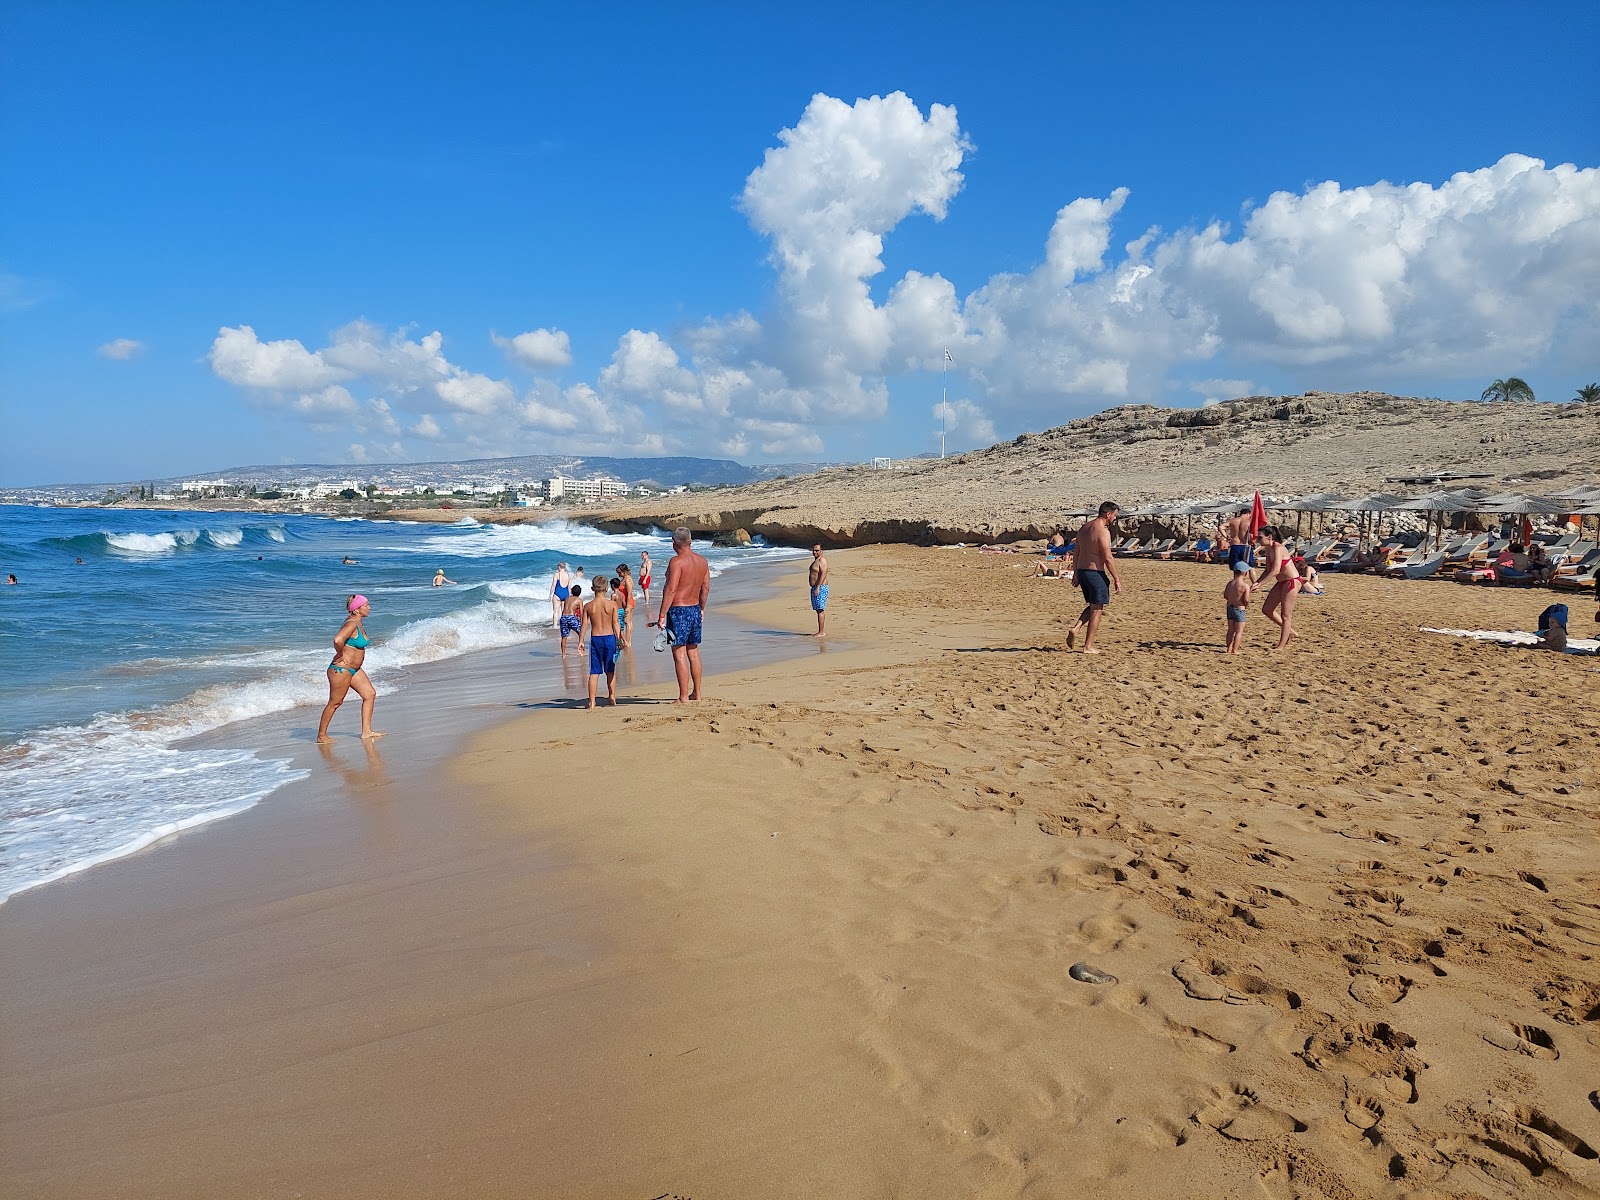 Kotsias beach'in fotoğrafı kahverengi kum yüzey ile